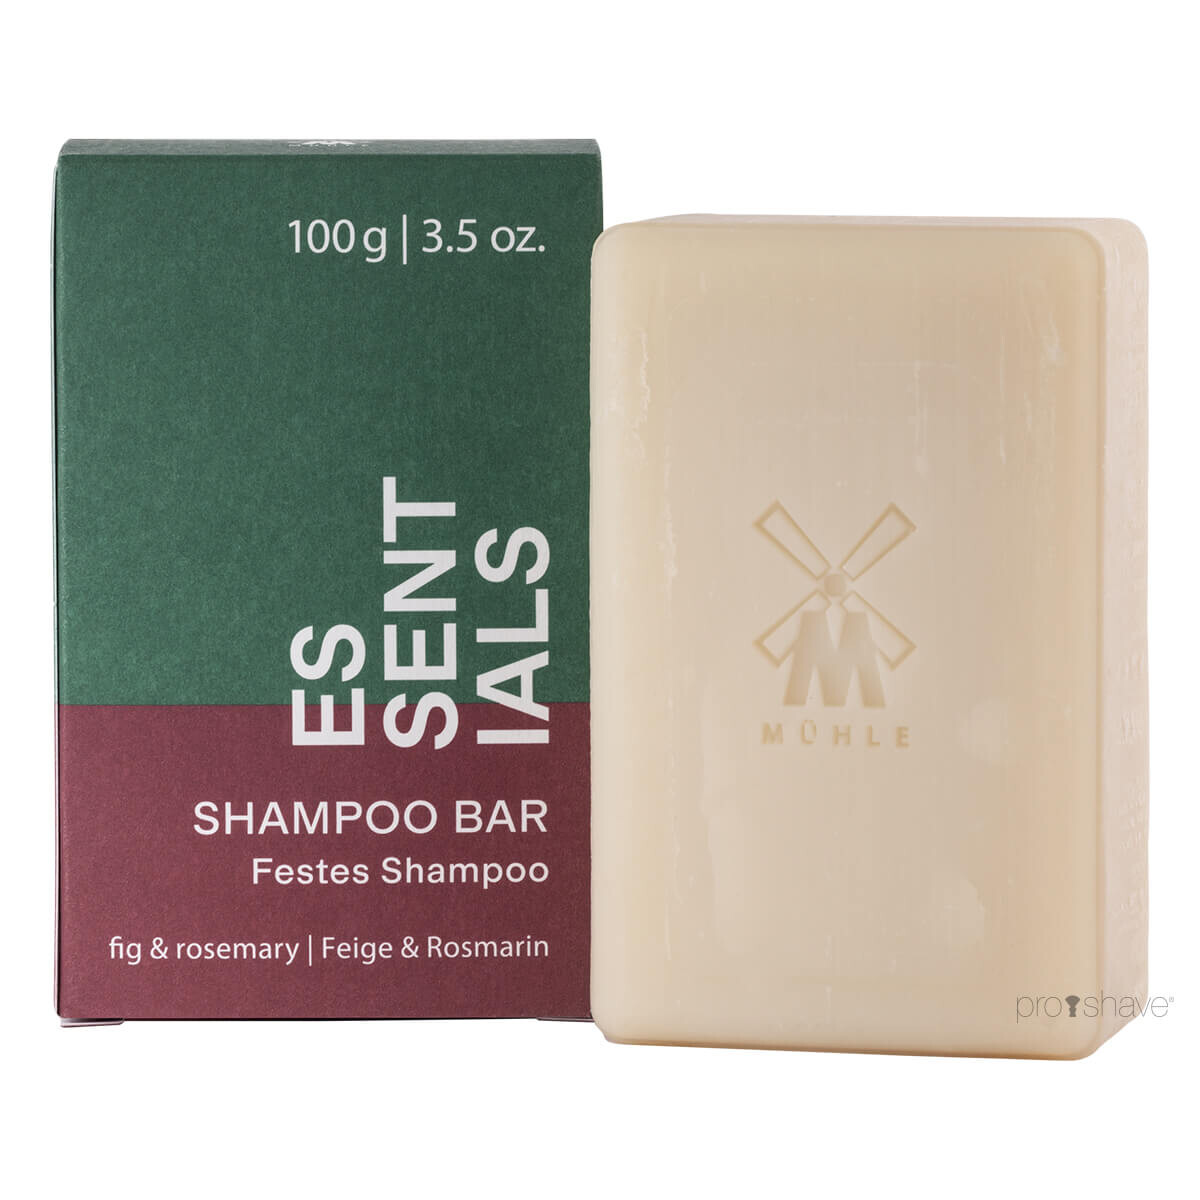 Mühle Shampoo Bar, Fig & Rosemary, Essentials, 100 gr.